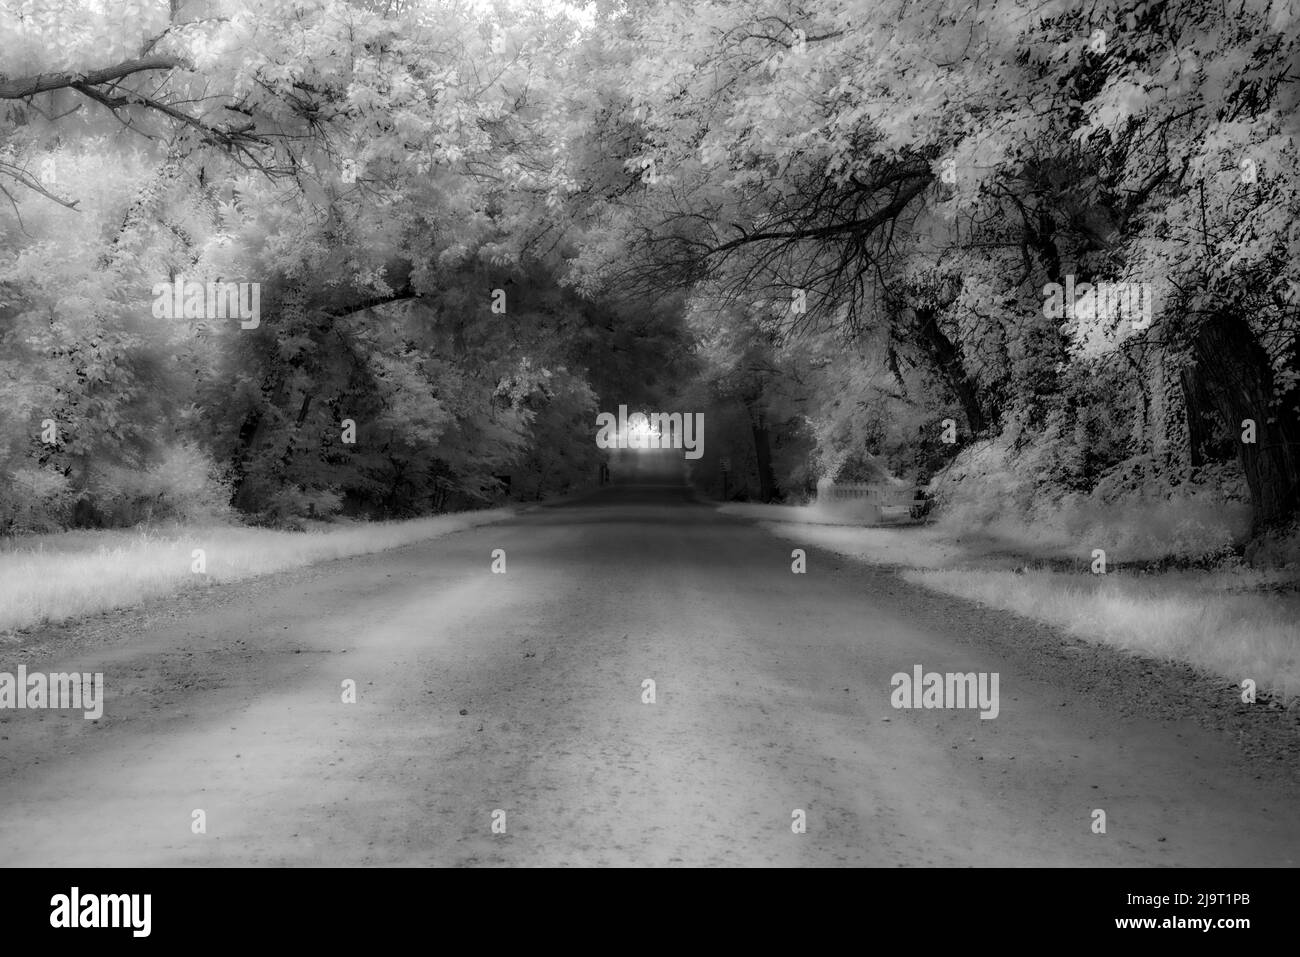 La vieja carretera desaparece a través del túnel de árboles Foto de stock